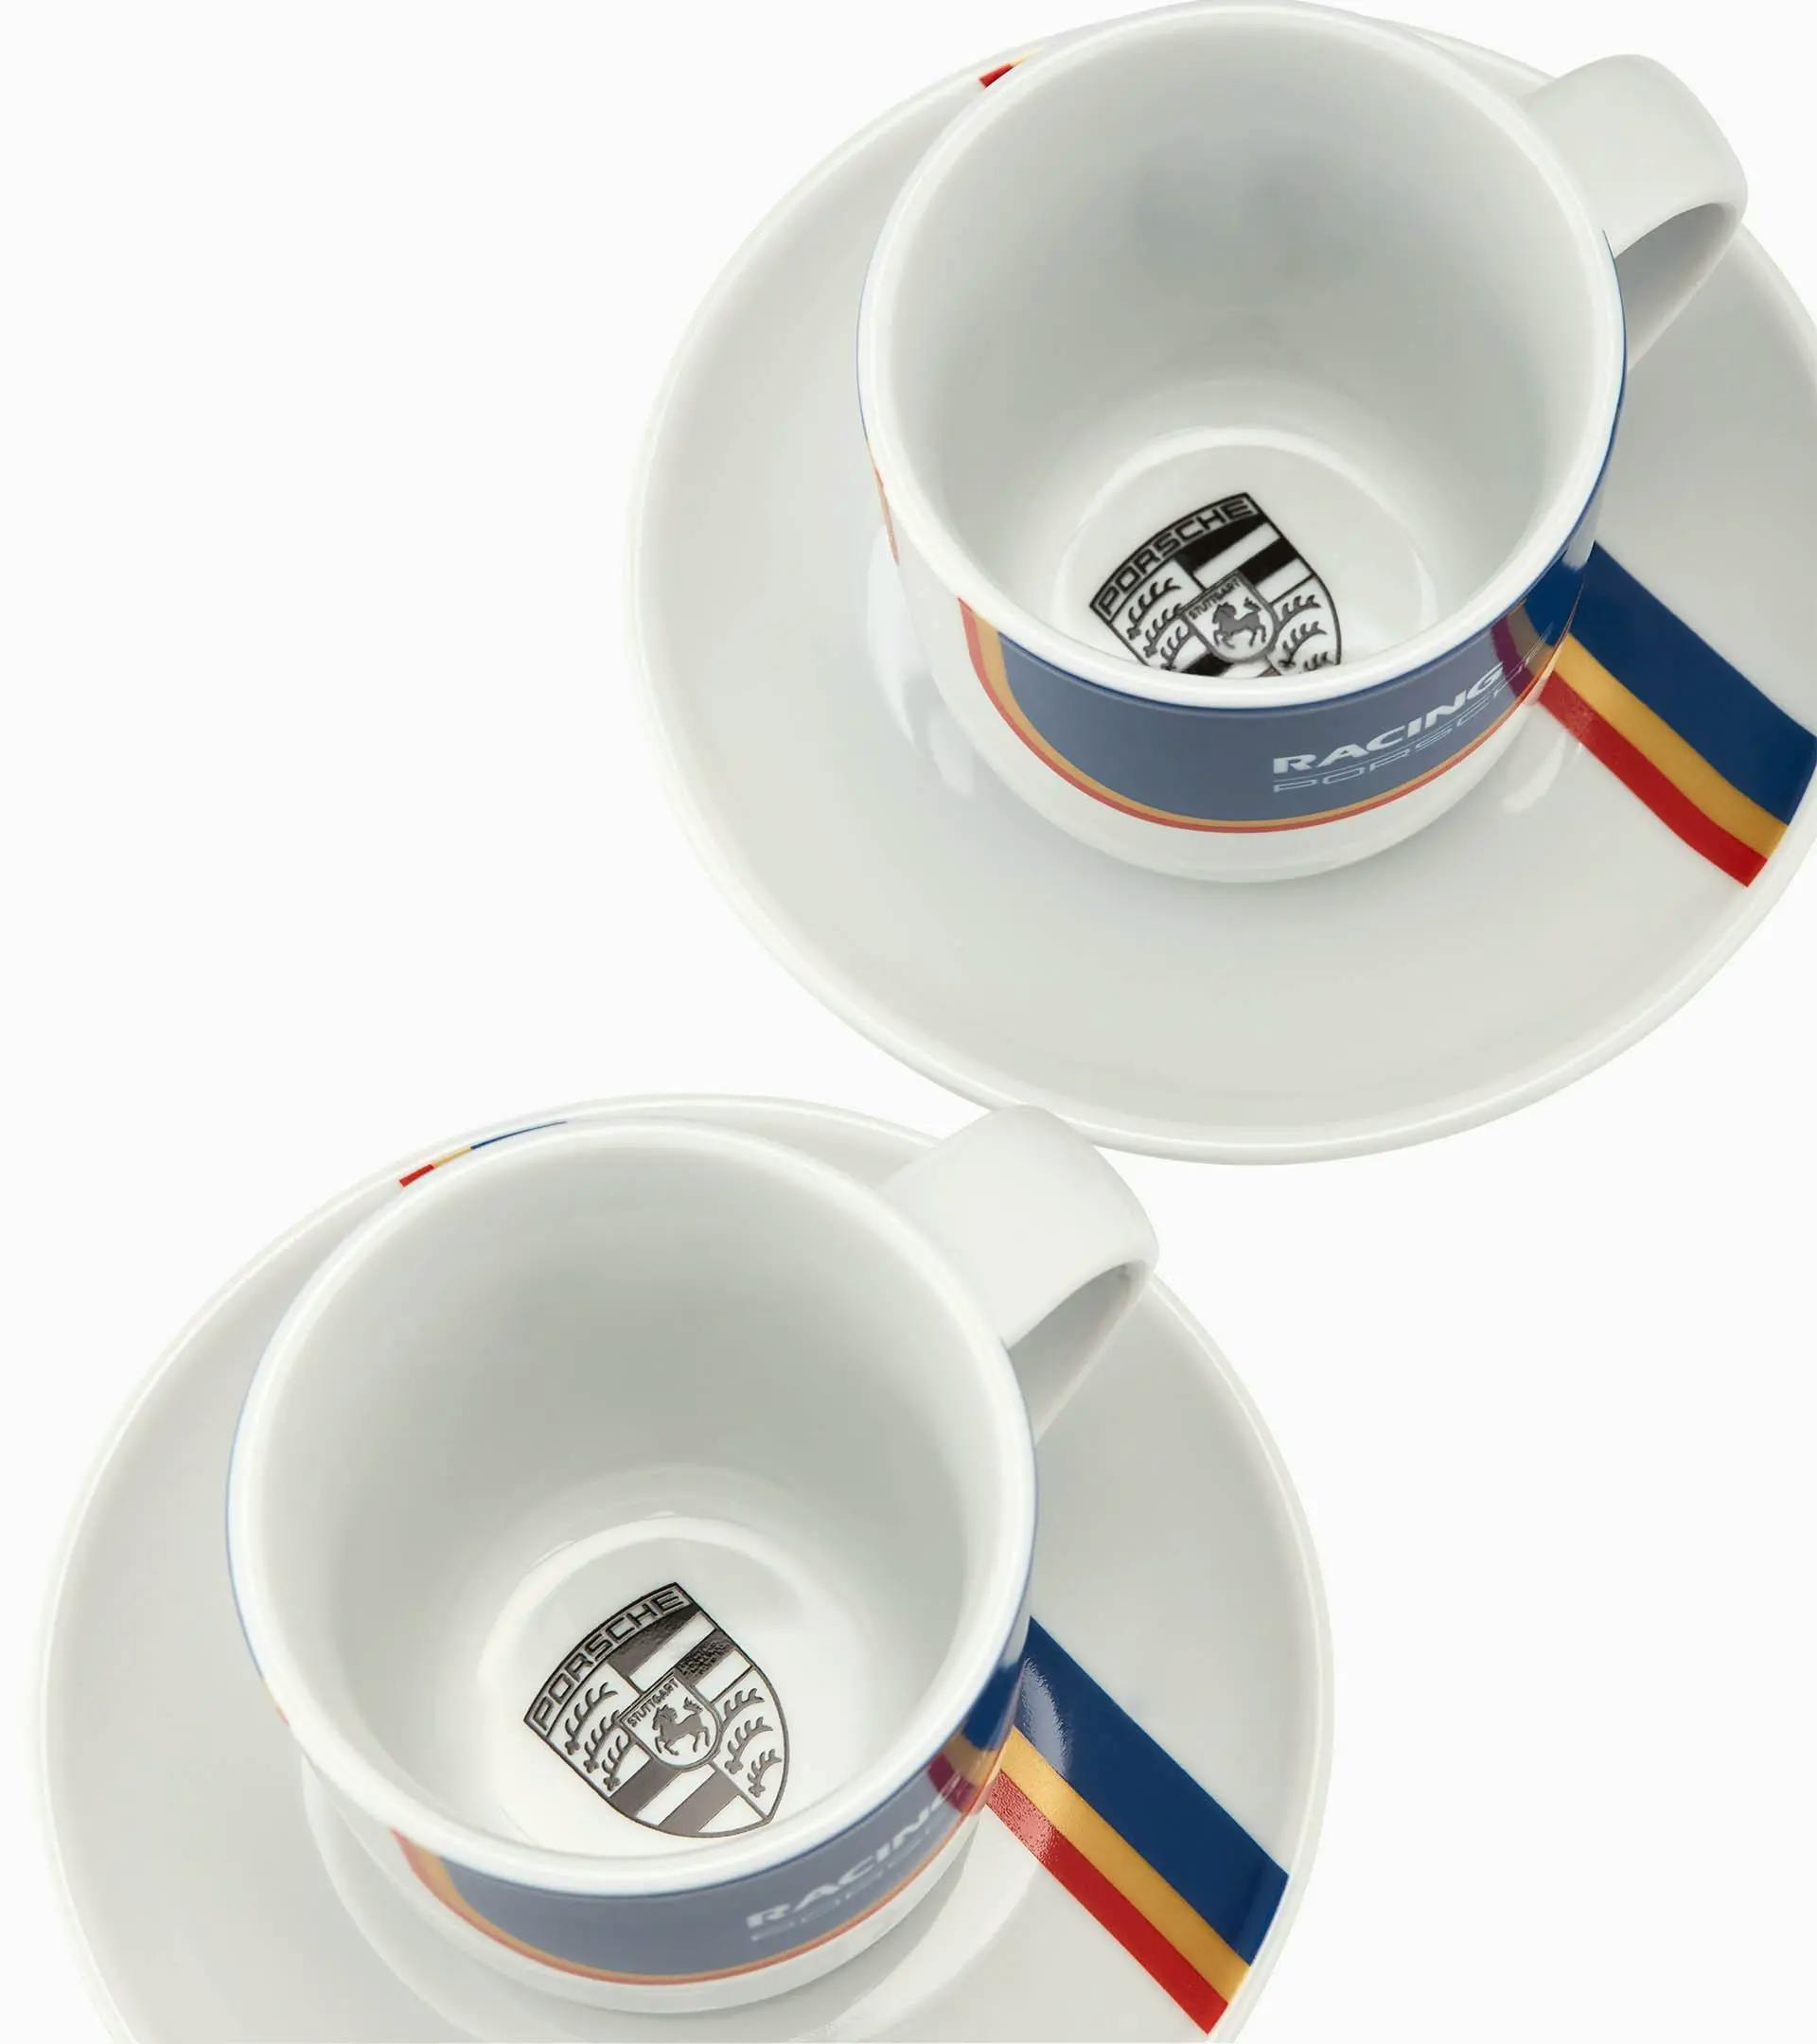 Collector's Espresso Duo No. 5 – Limited Edition – Racing 2